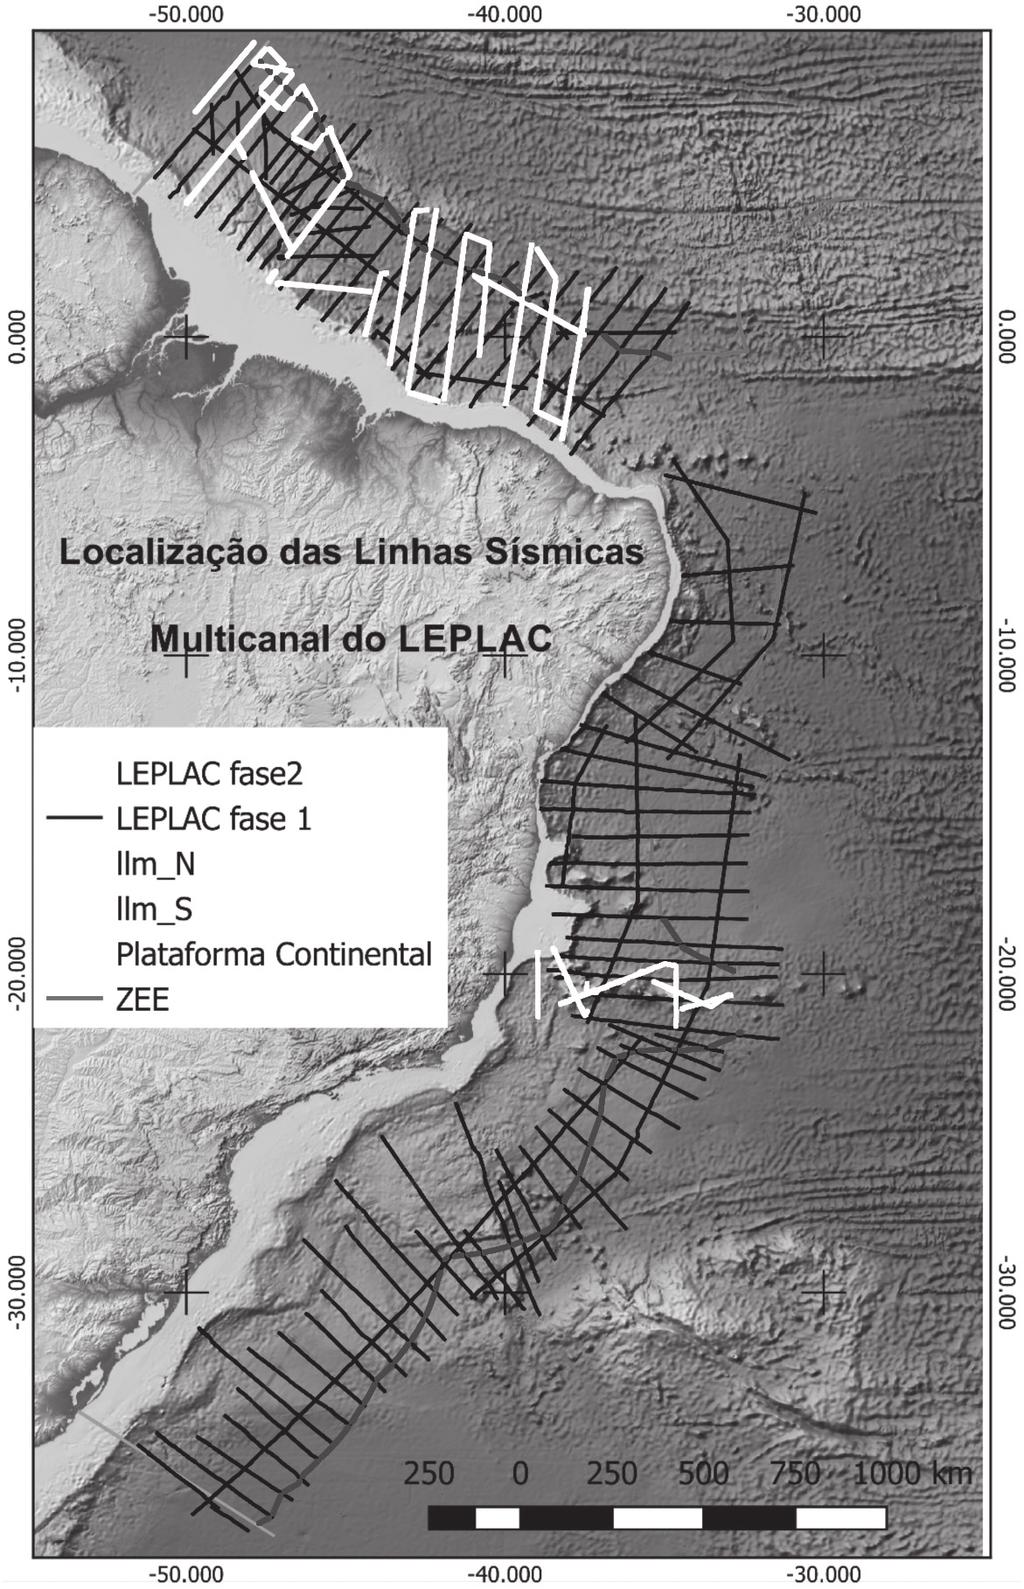 figura 8 Mapa regional da margem continental do Brasil com os levantamentos sísmicos do Leplac das fases I e II quatro navios de pesquisas.